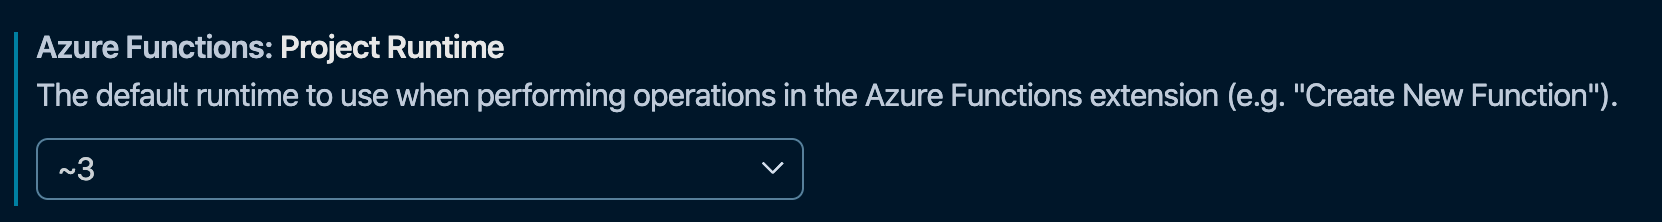 Configuração de runtime da extensão do Azure Functions